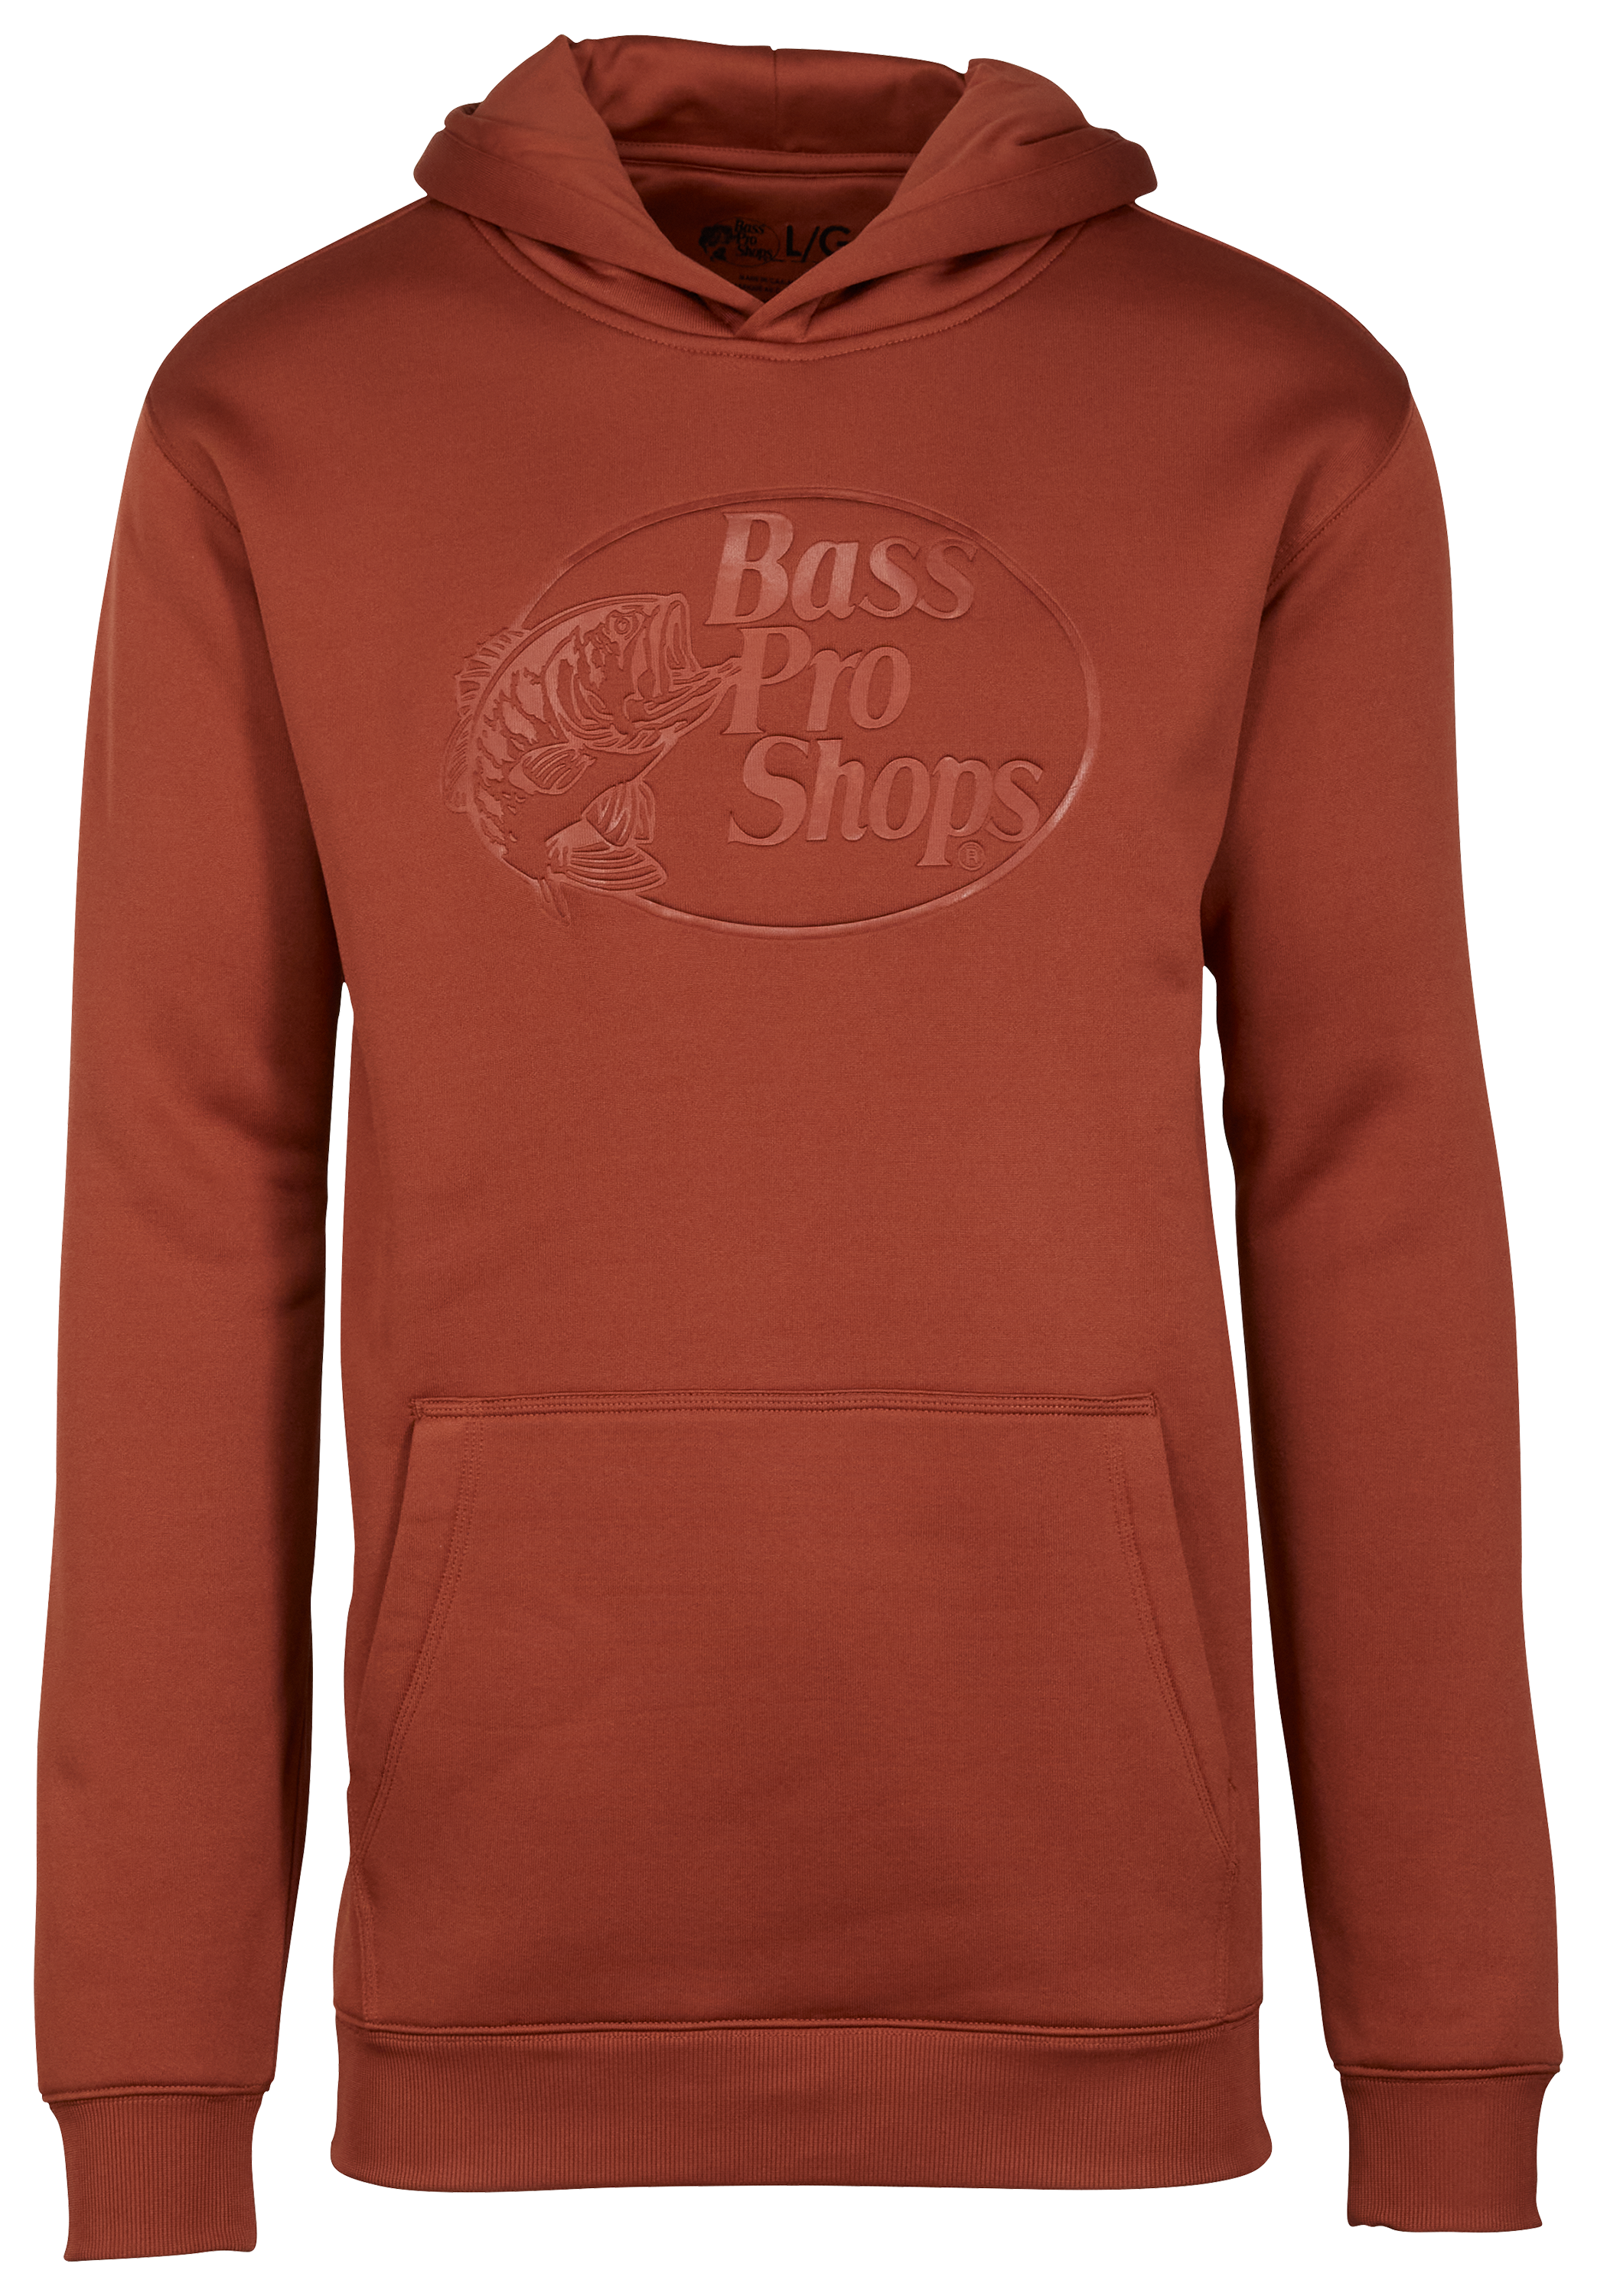 Bass Pro Shops Hoodies & Sweatshirts for Men for Sale, Shop Men's Athletic  Clothes